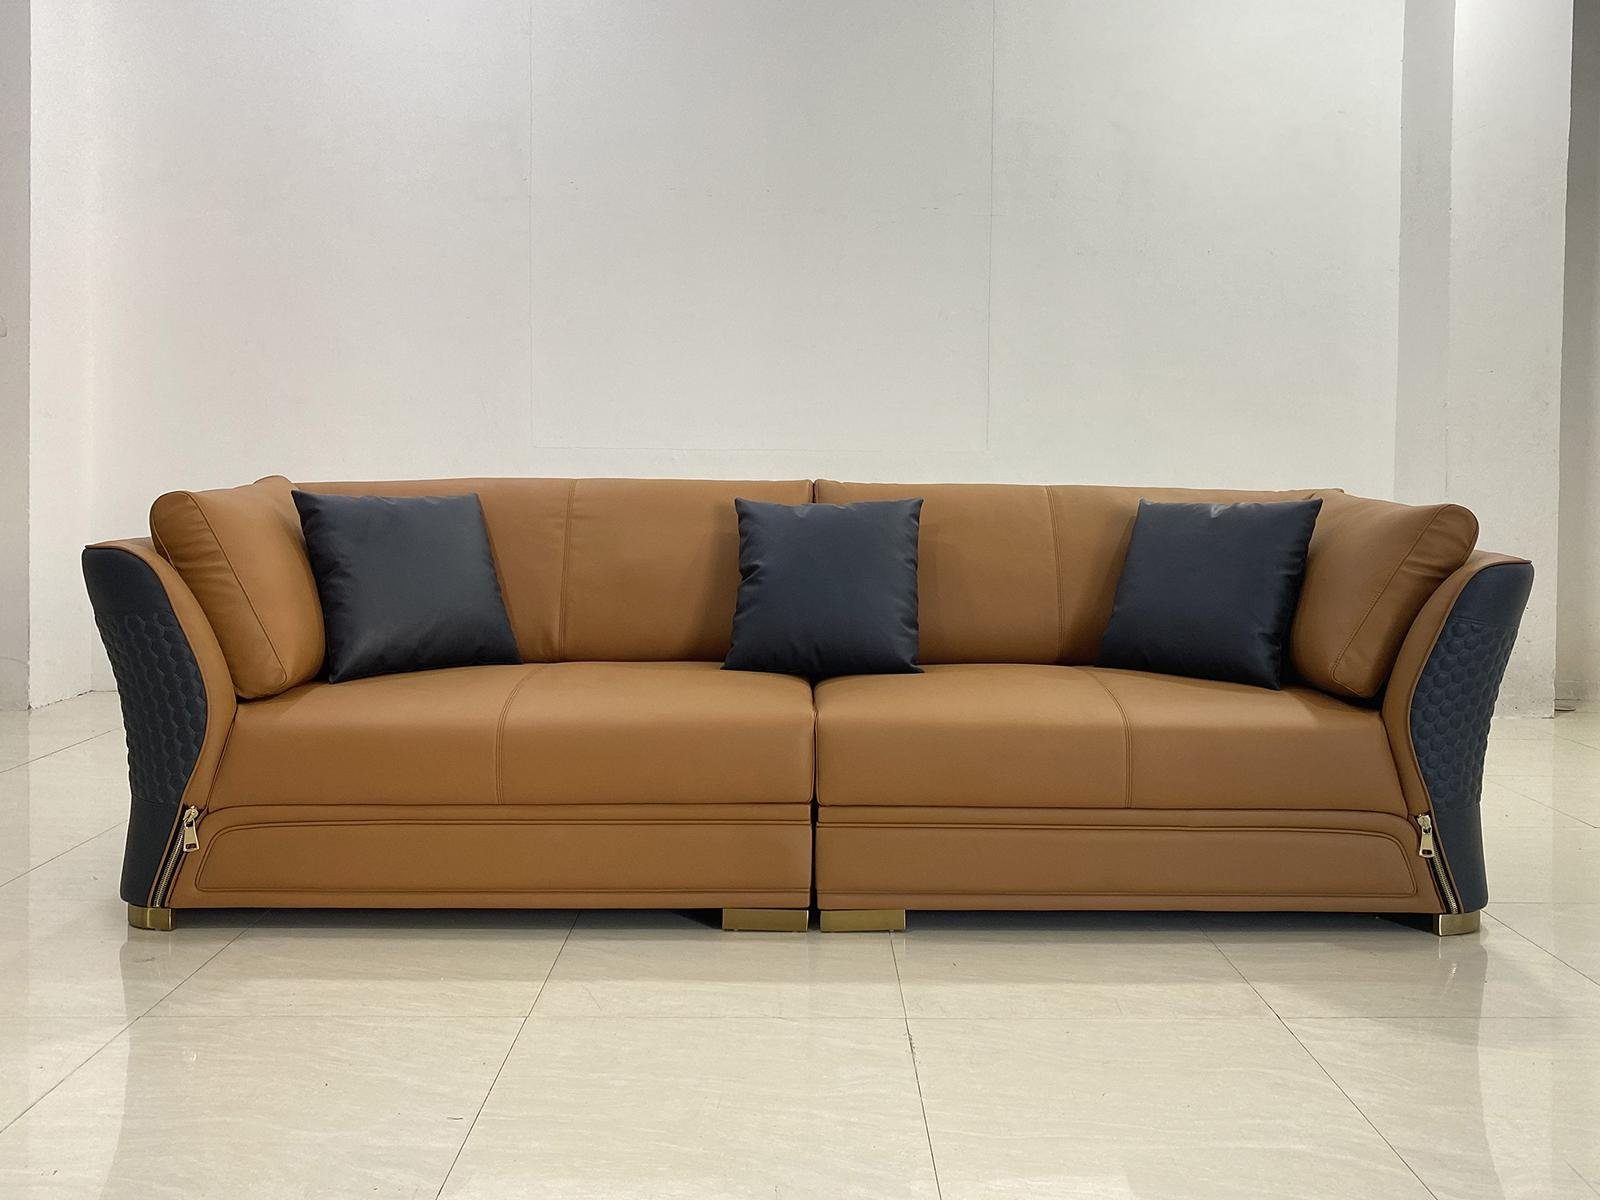 JVmoebel 4-Sitzer, Couch Polster Design Sofa Moderne 4er Sitz Sofas Wohn Zimmer Braun